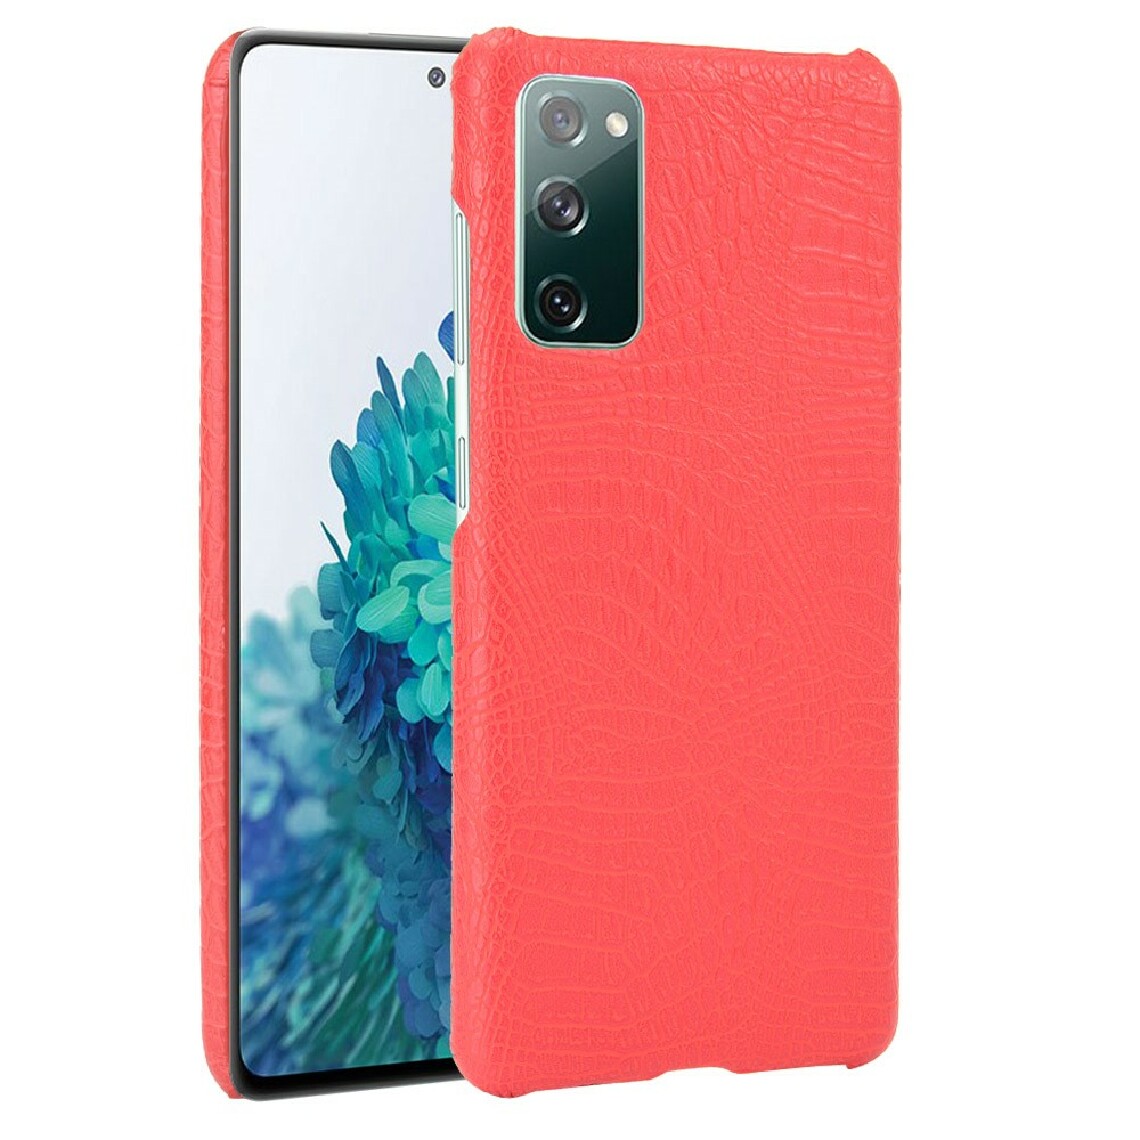 Other - Coque en TPU + PU texture de crocodile rouge pour votre Samsung Galaxy S20 FE/S20 FE 5G - Coque, étui smartphone